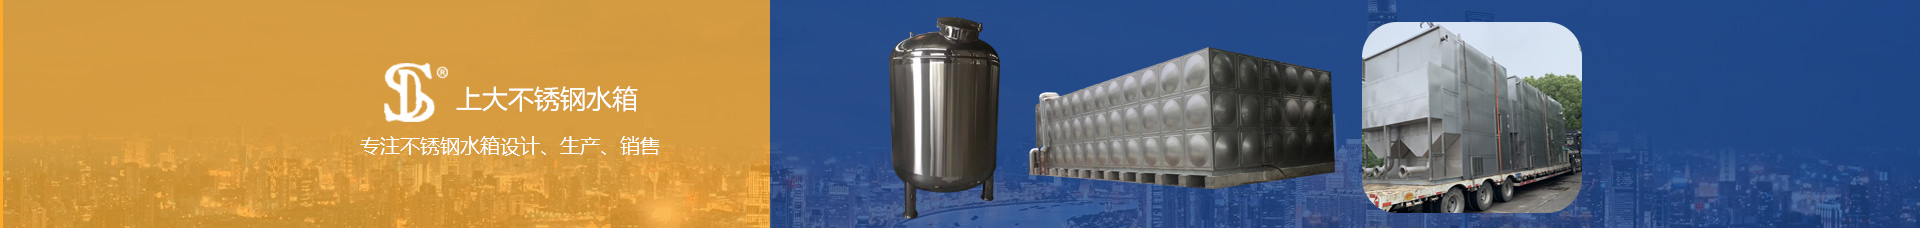 上大不銹鋼水箱專注不銹鋼水箱設計、生產、銷售